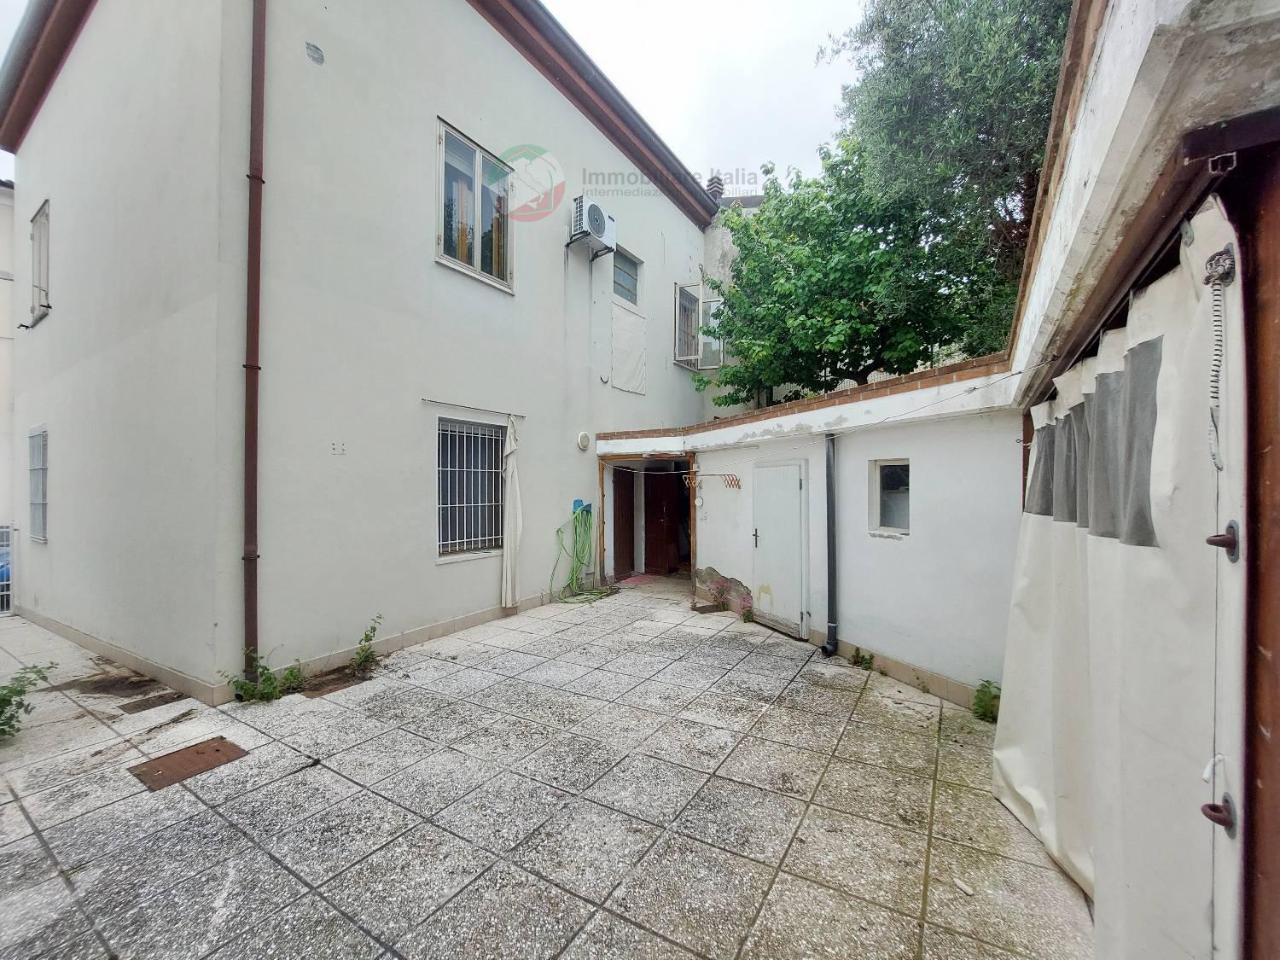 Villa bifamiliare in vendita a Coriano